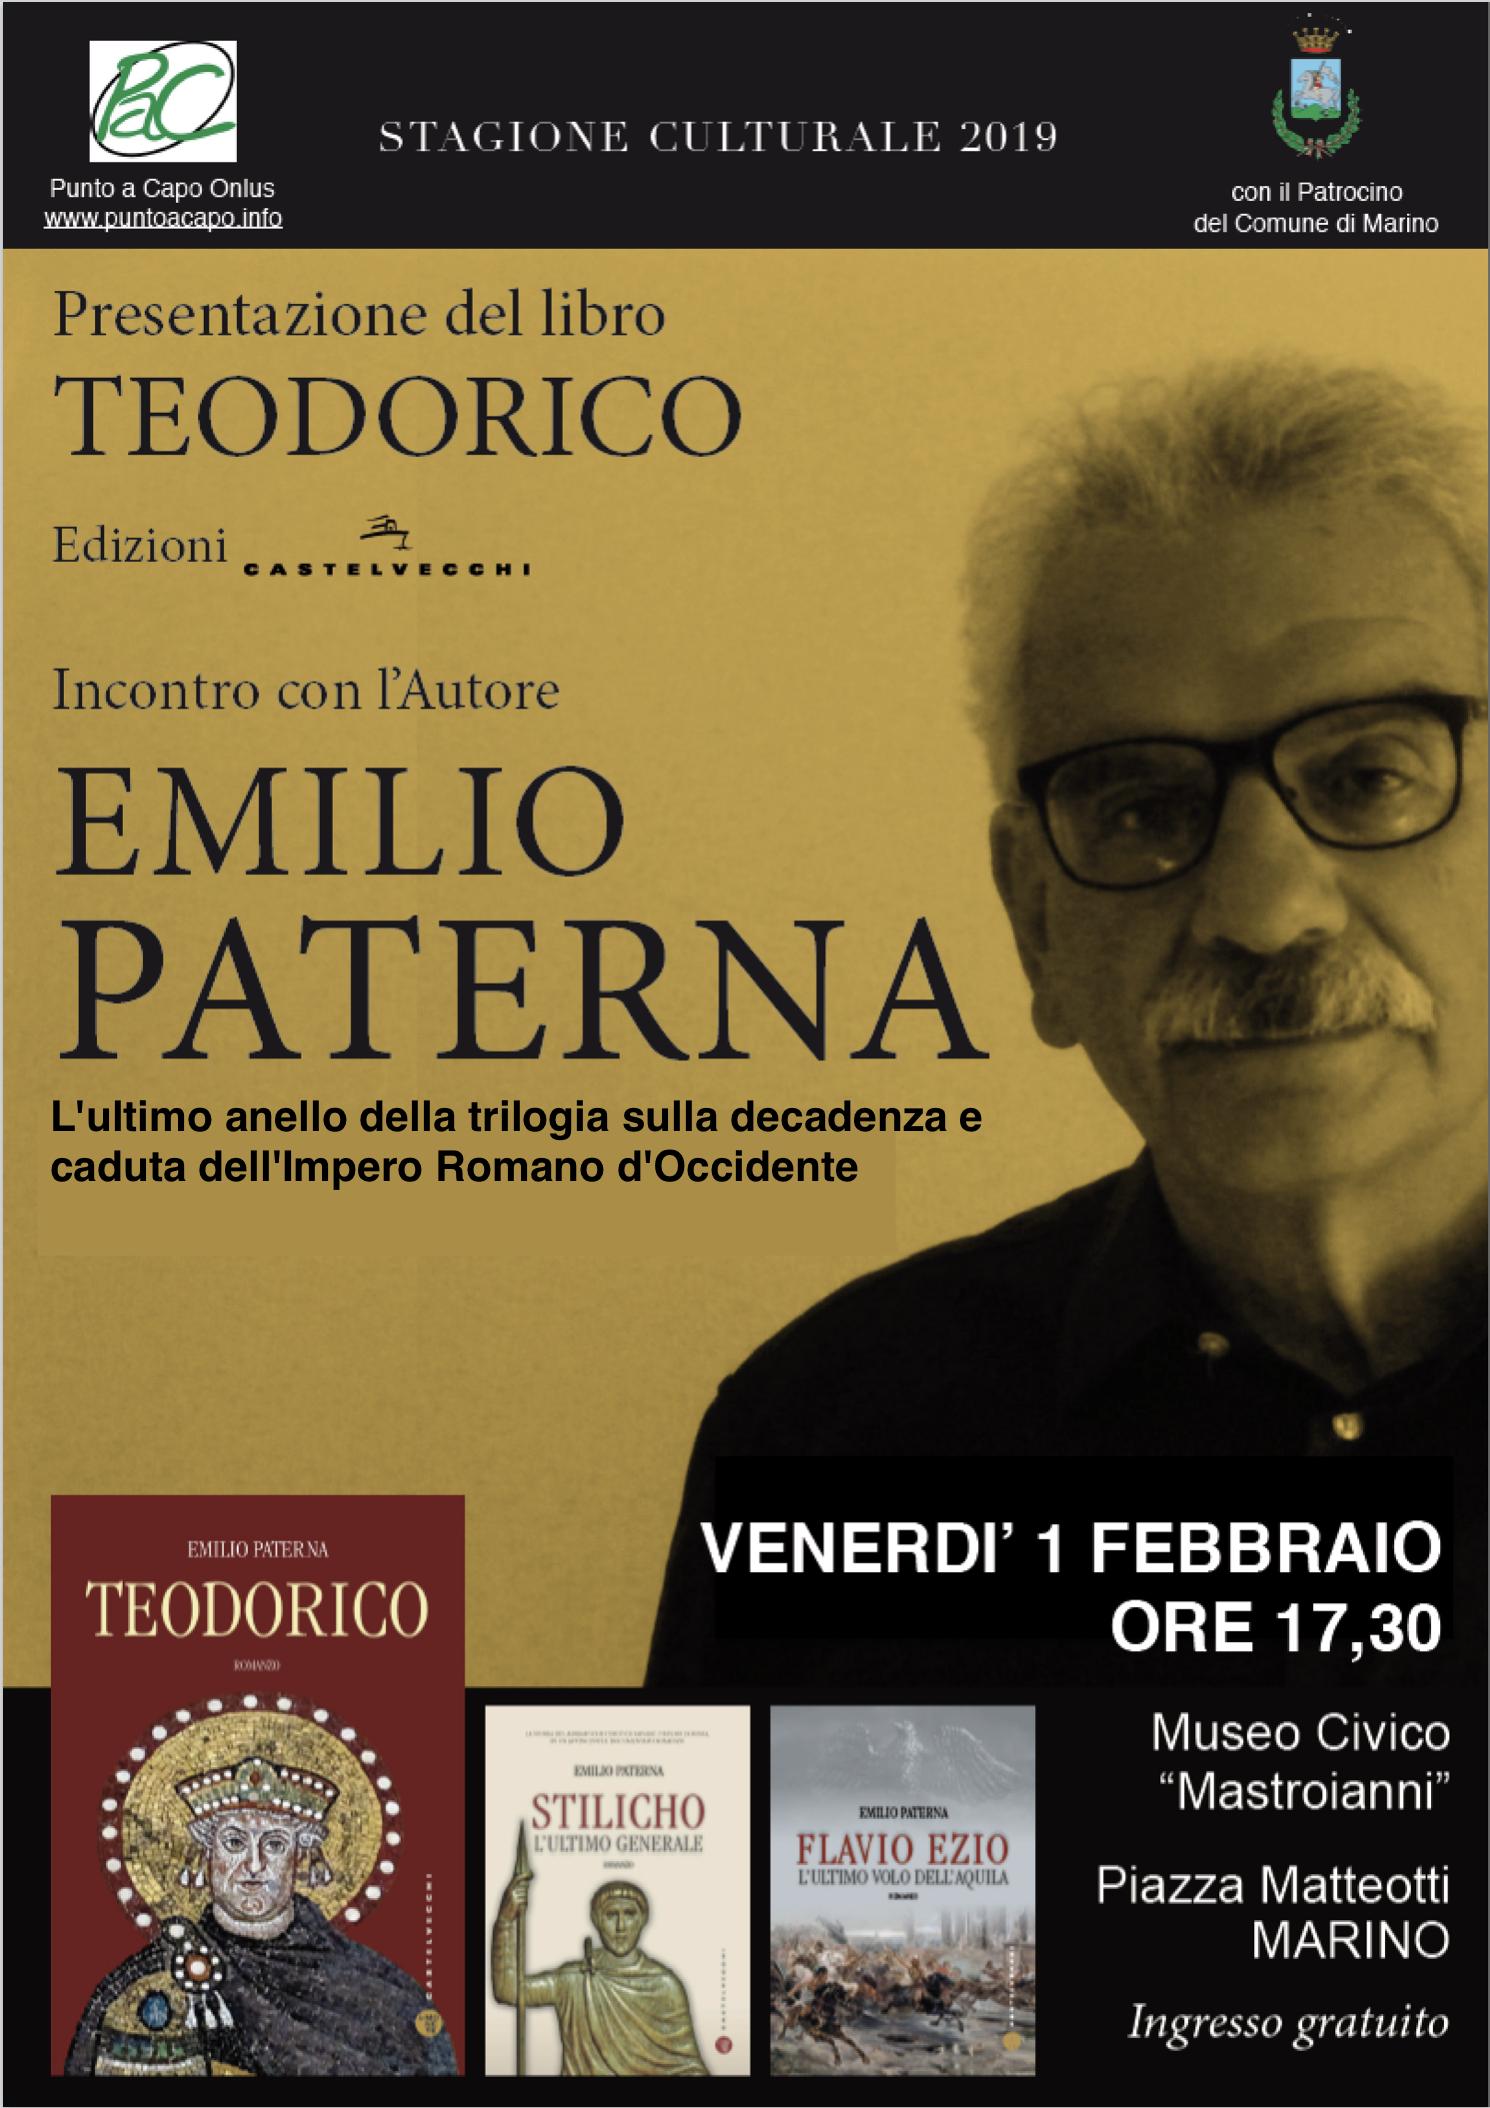 Marino: al Museo Civico Mastroianni, Emilio Paterna presenta il suo terzo libro della saga sull’Impero Romano﻿ TEODORICO﻿